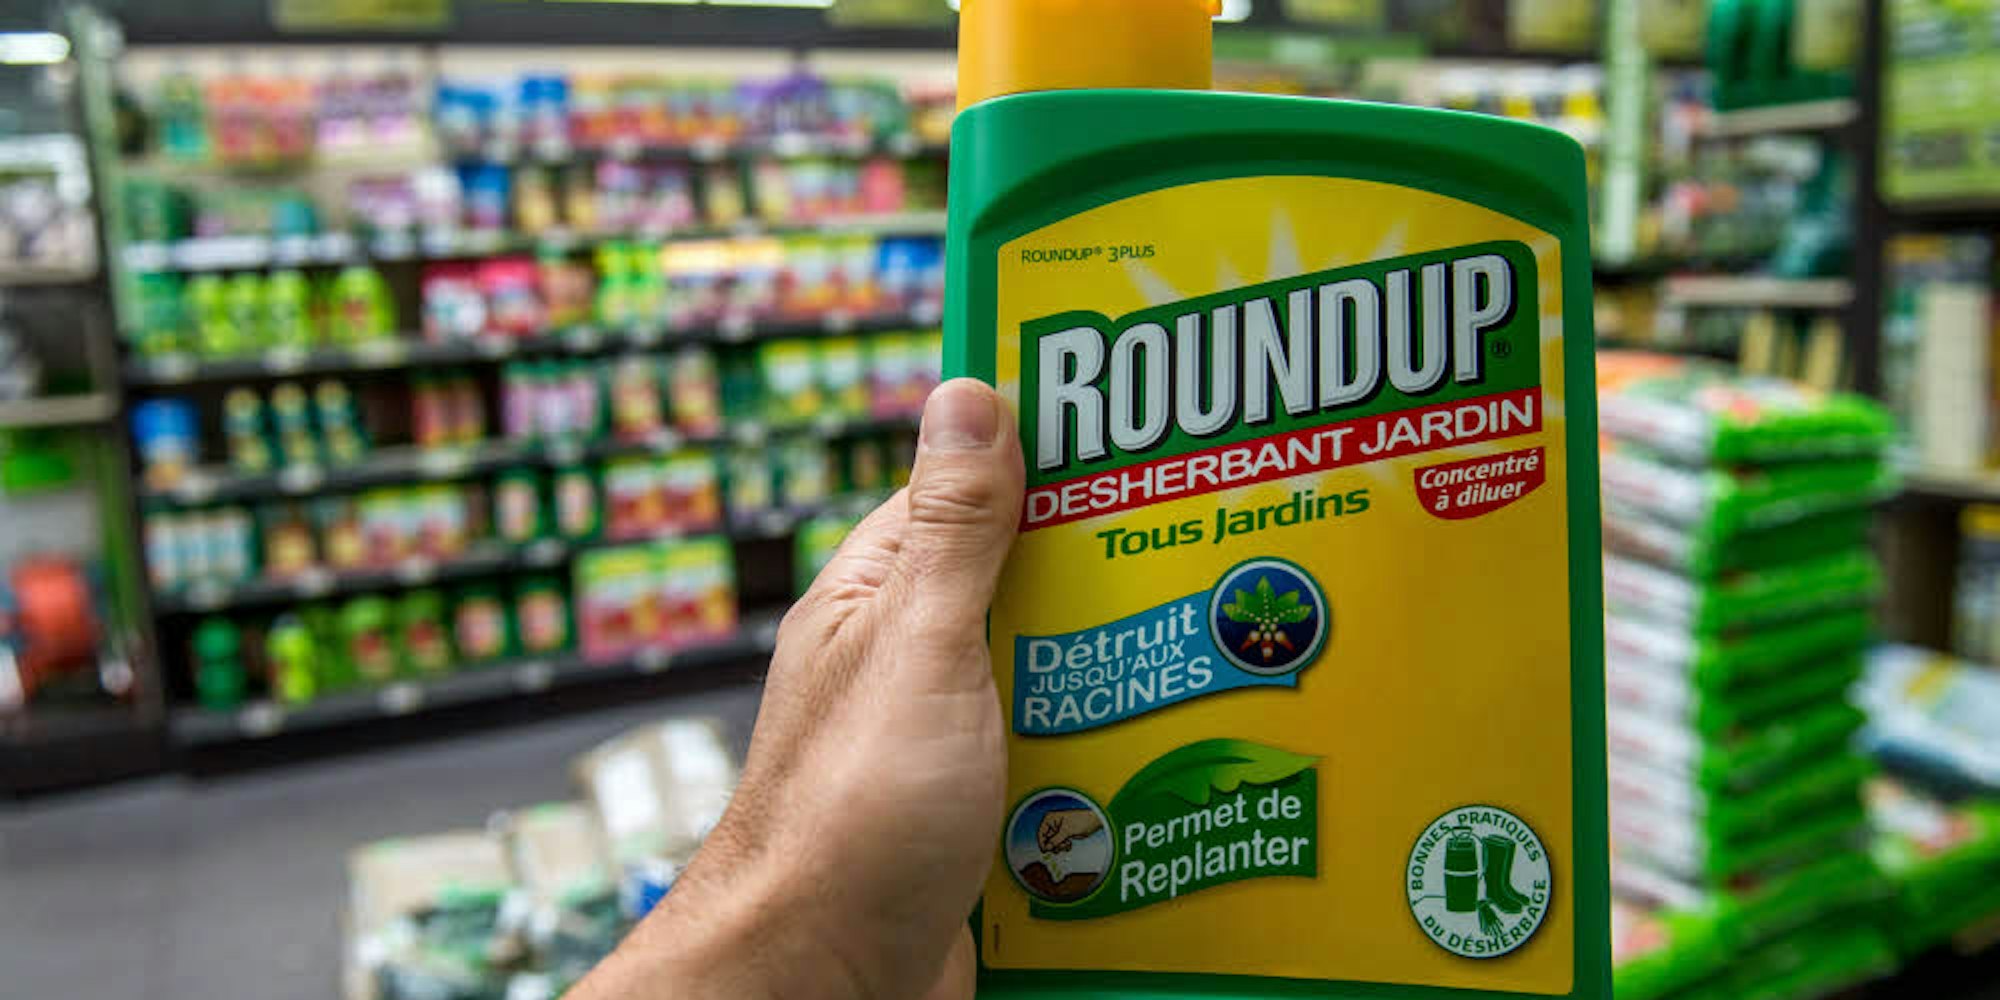 Vor allem unter dem Markennamen „Roundup“ ist das umstrittene Pflanzenschutzmittel Glyphosat bekannt. Mobau Klein will es nun aus dem Sortiment seiner Niederkasseler Baumärkte nehmen.